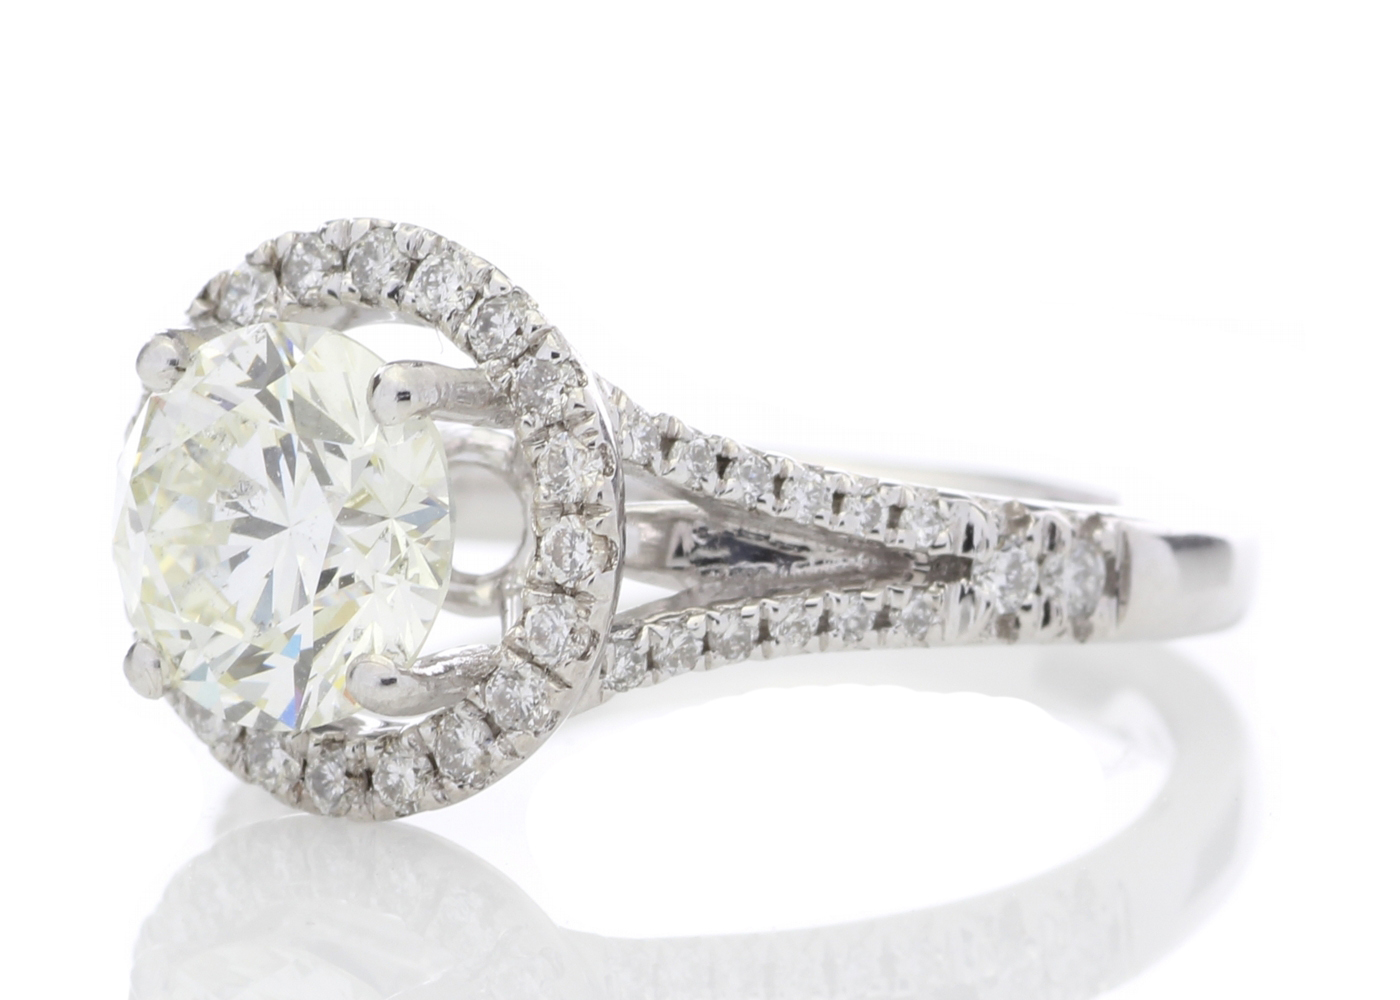 18k White Gold Halo Set Diamond Ring 1.98 Carats - Image 2 of 5